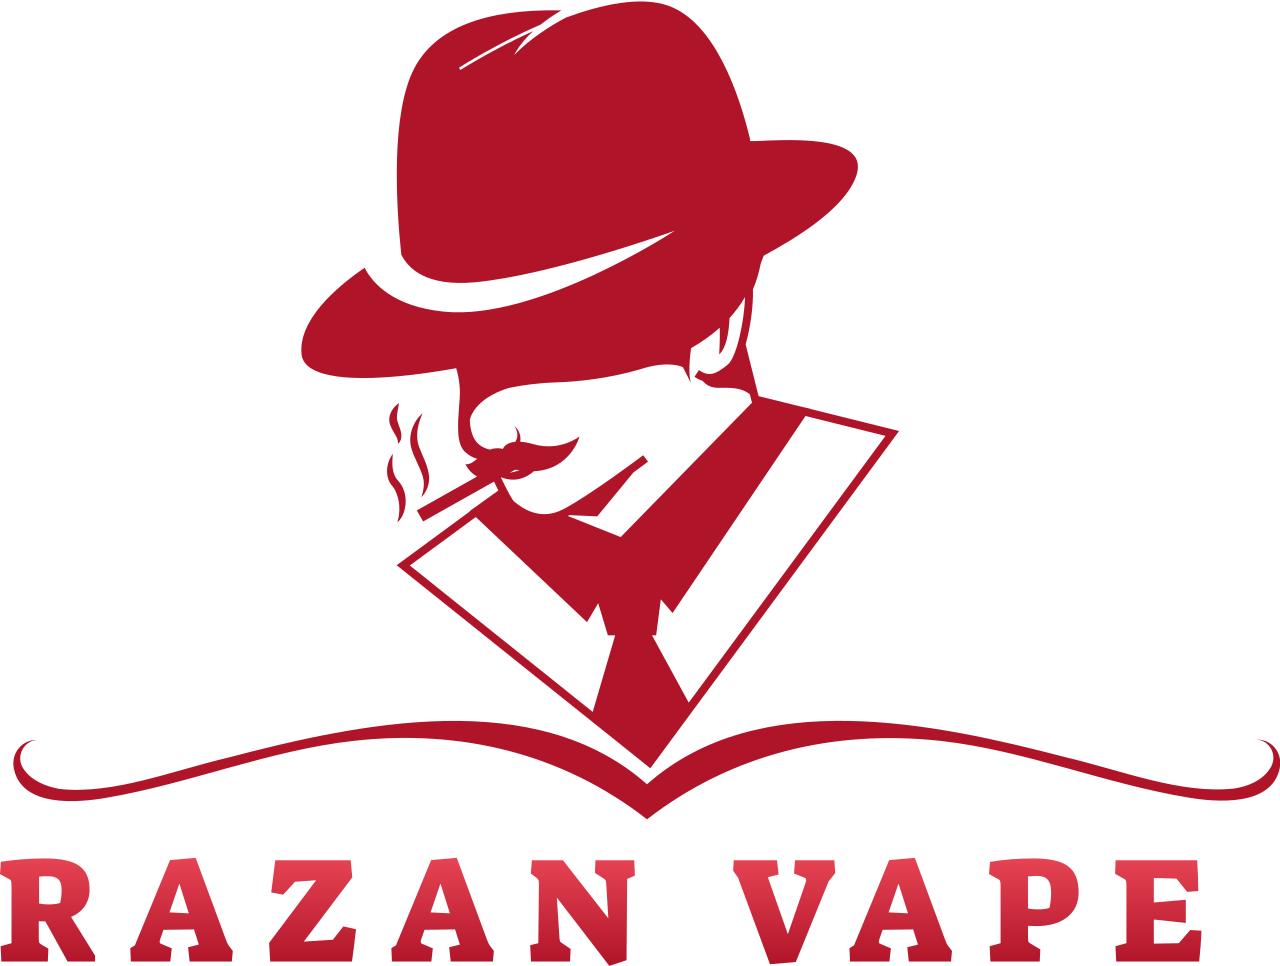 Razan Vape's logo